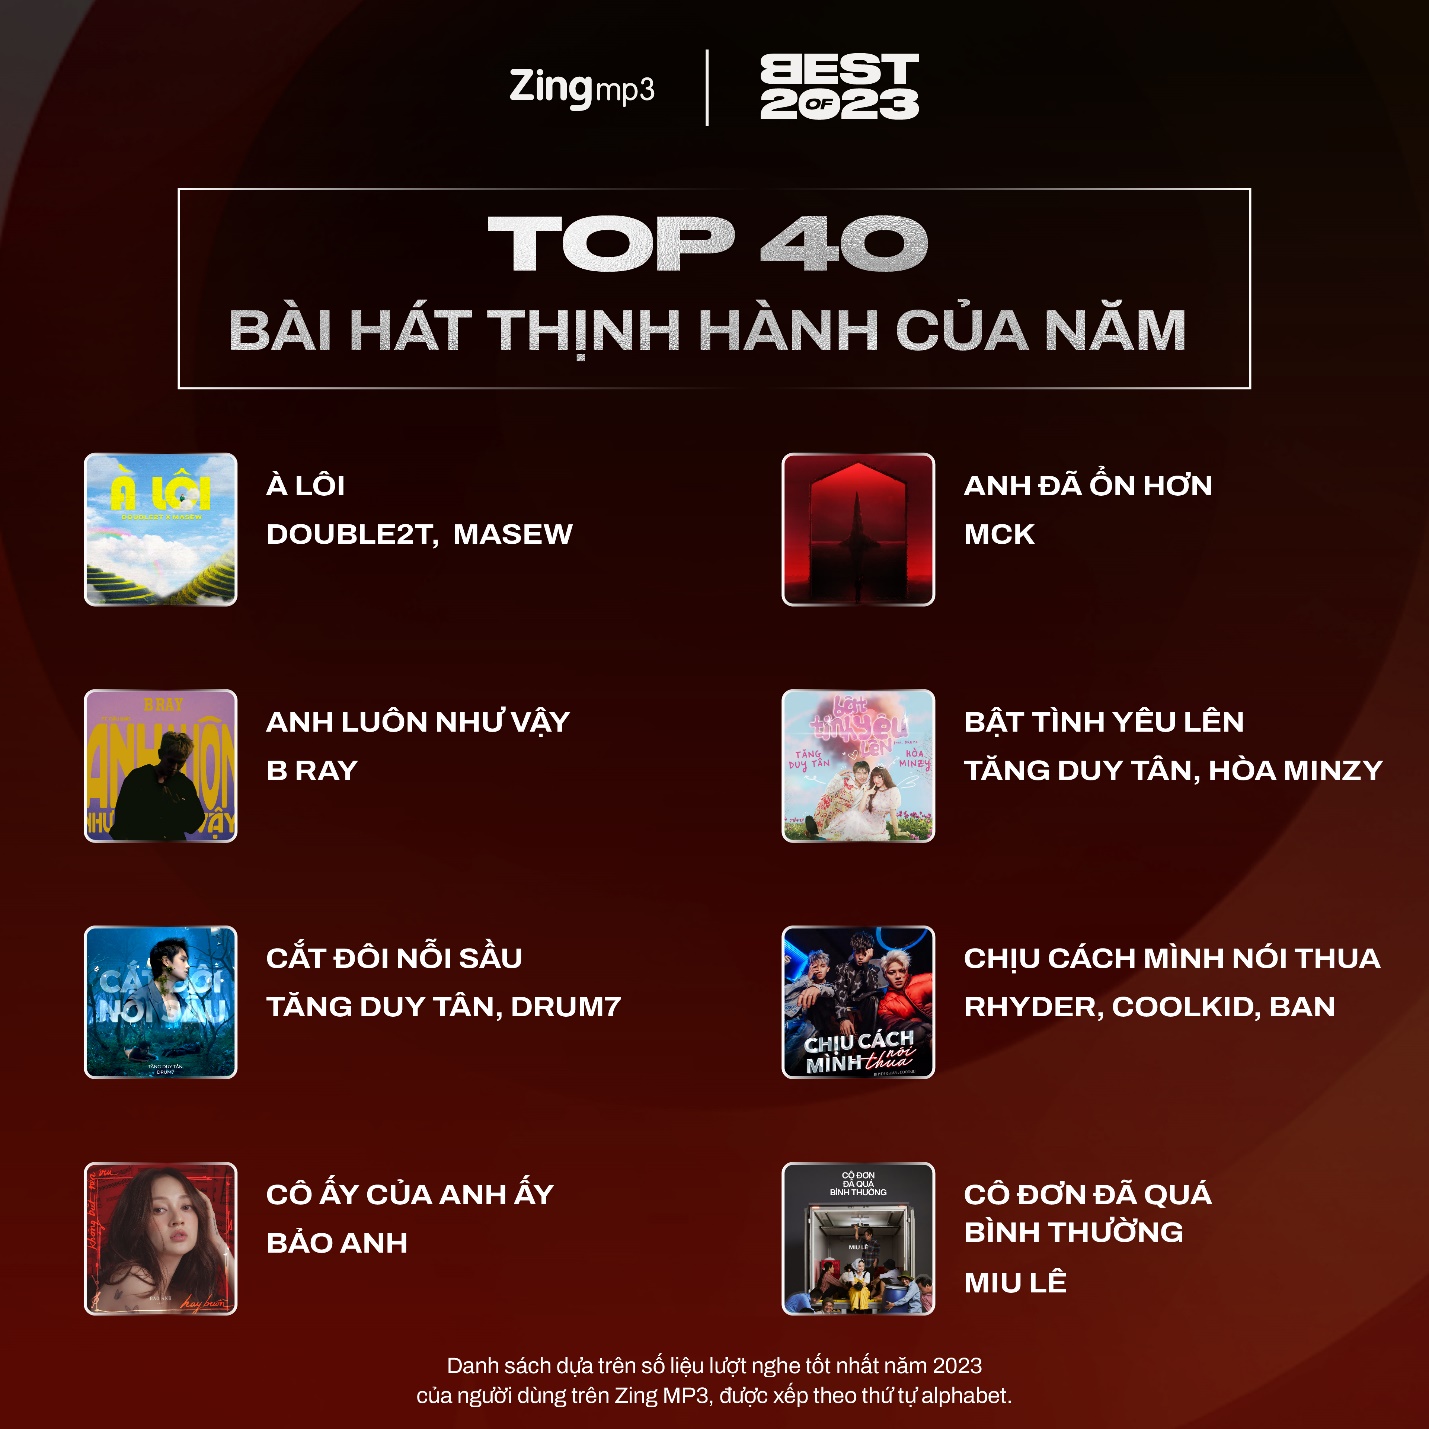 Top 40 nghệ sĩ và bài hát thịnh hành nhất Vpop năm 2023: Tăng Duy Tân lập cú đúp - Ảnh 7.